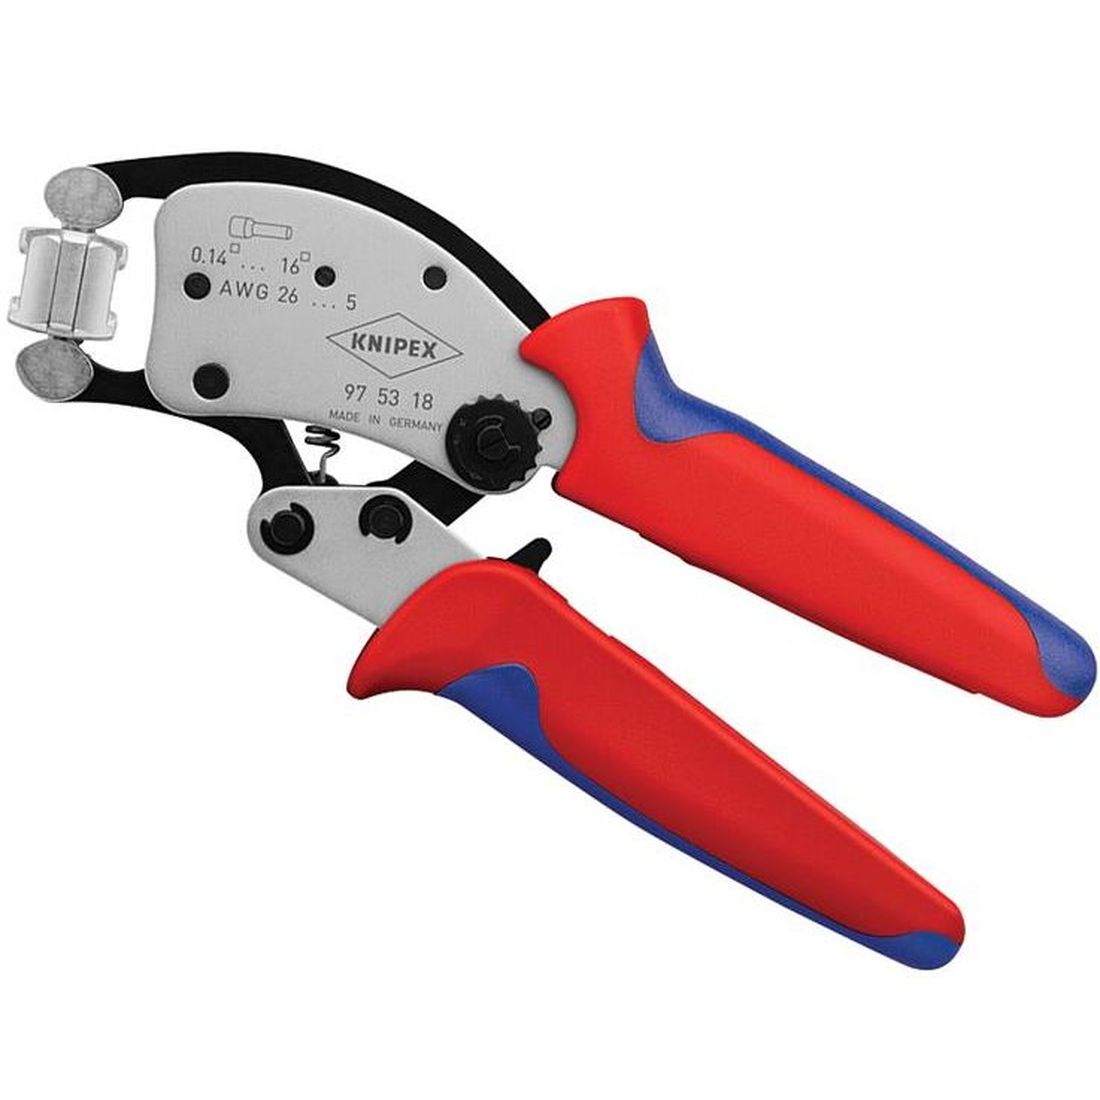 Knipex Twistor16 Self-Adjusting Pliers 200mm                                           